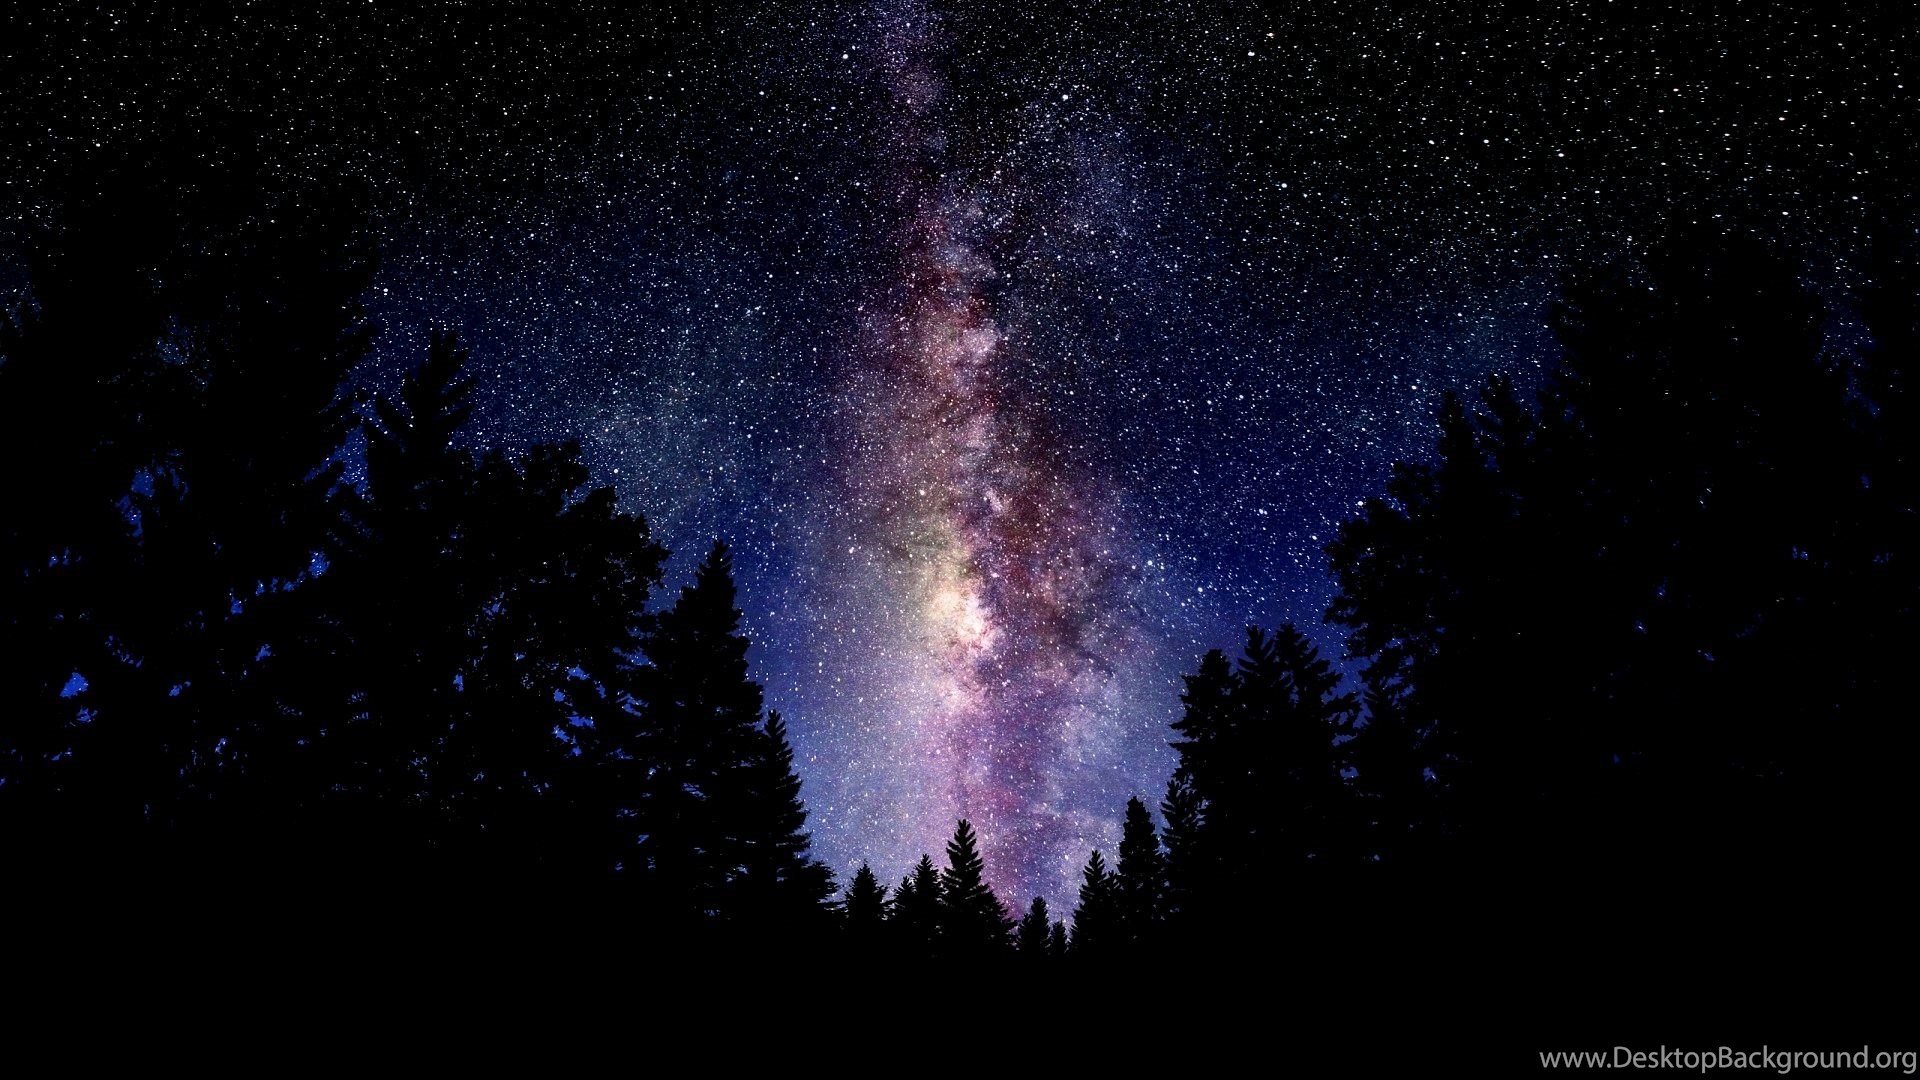 pc wallpaper tumblr,himmel,natur,galaxis,astronomisches objekt,dunkelheit